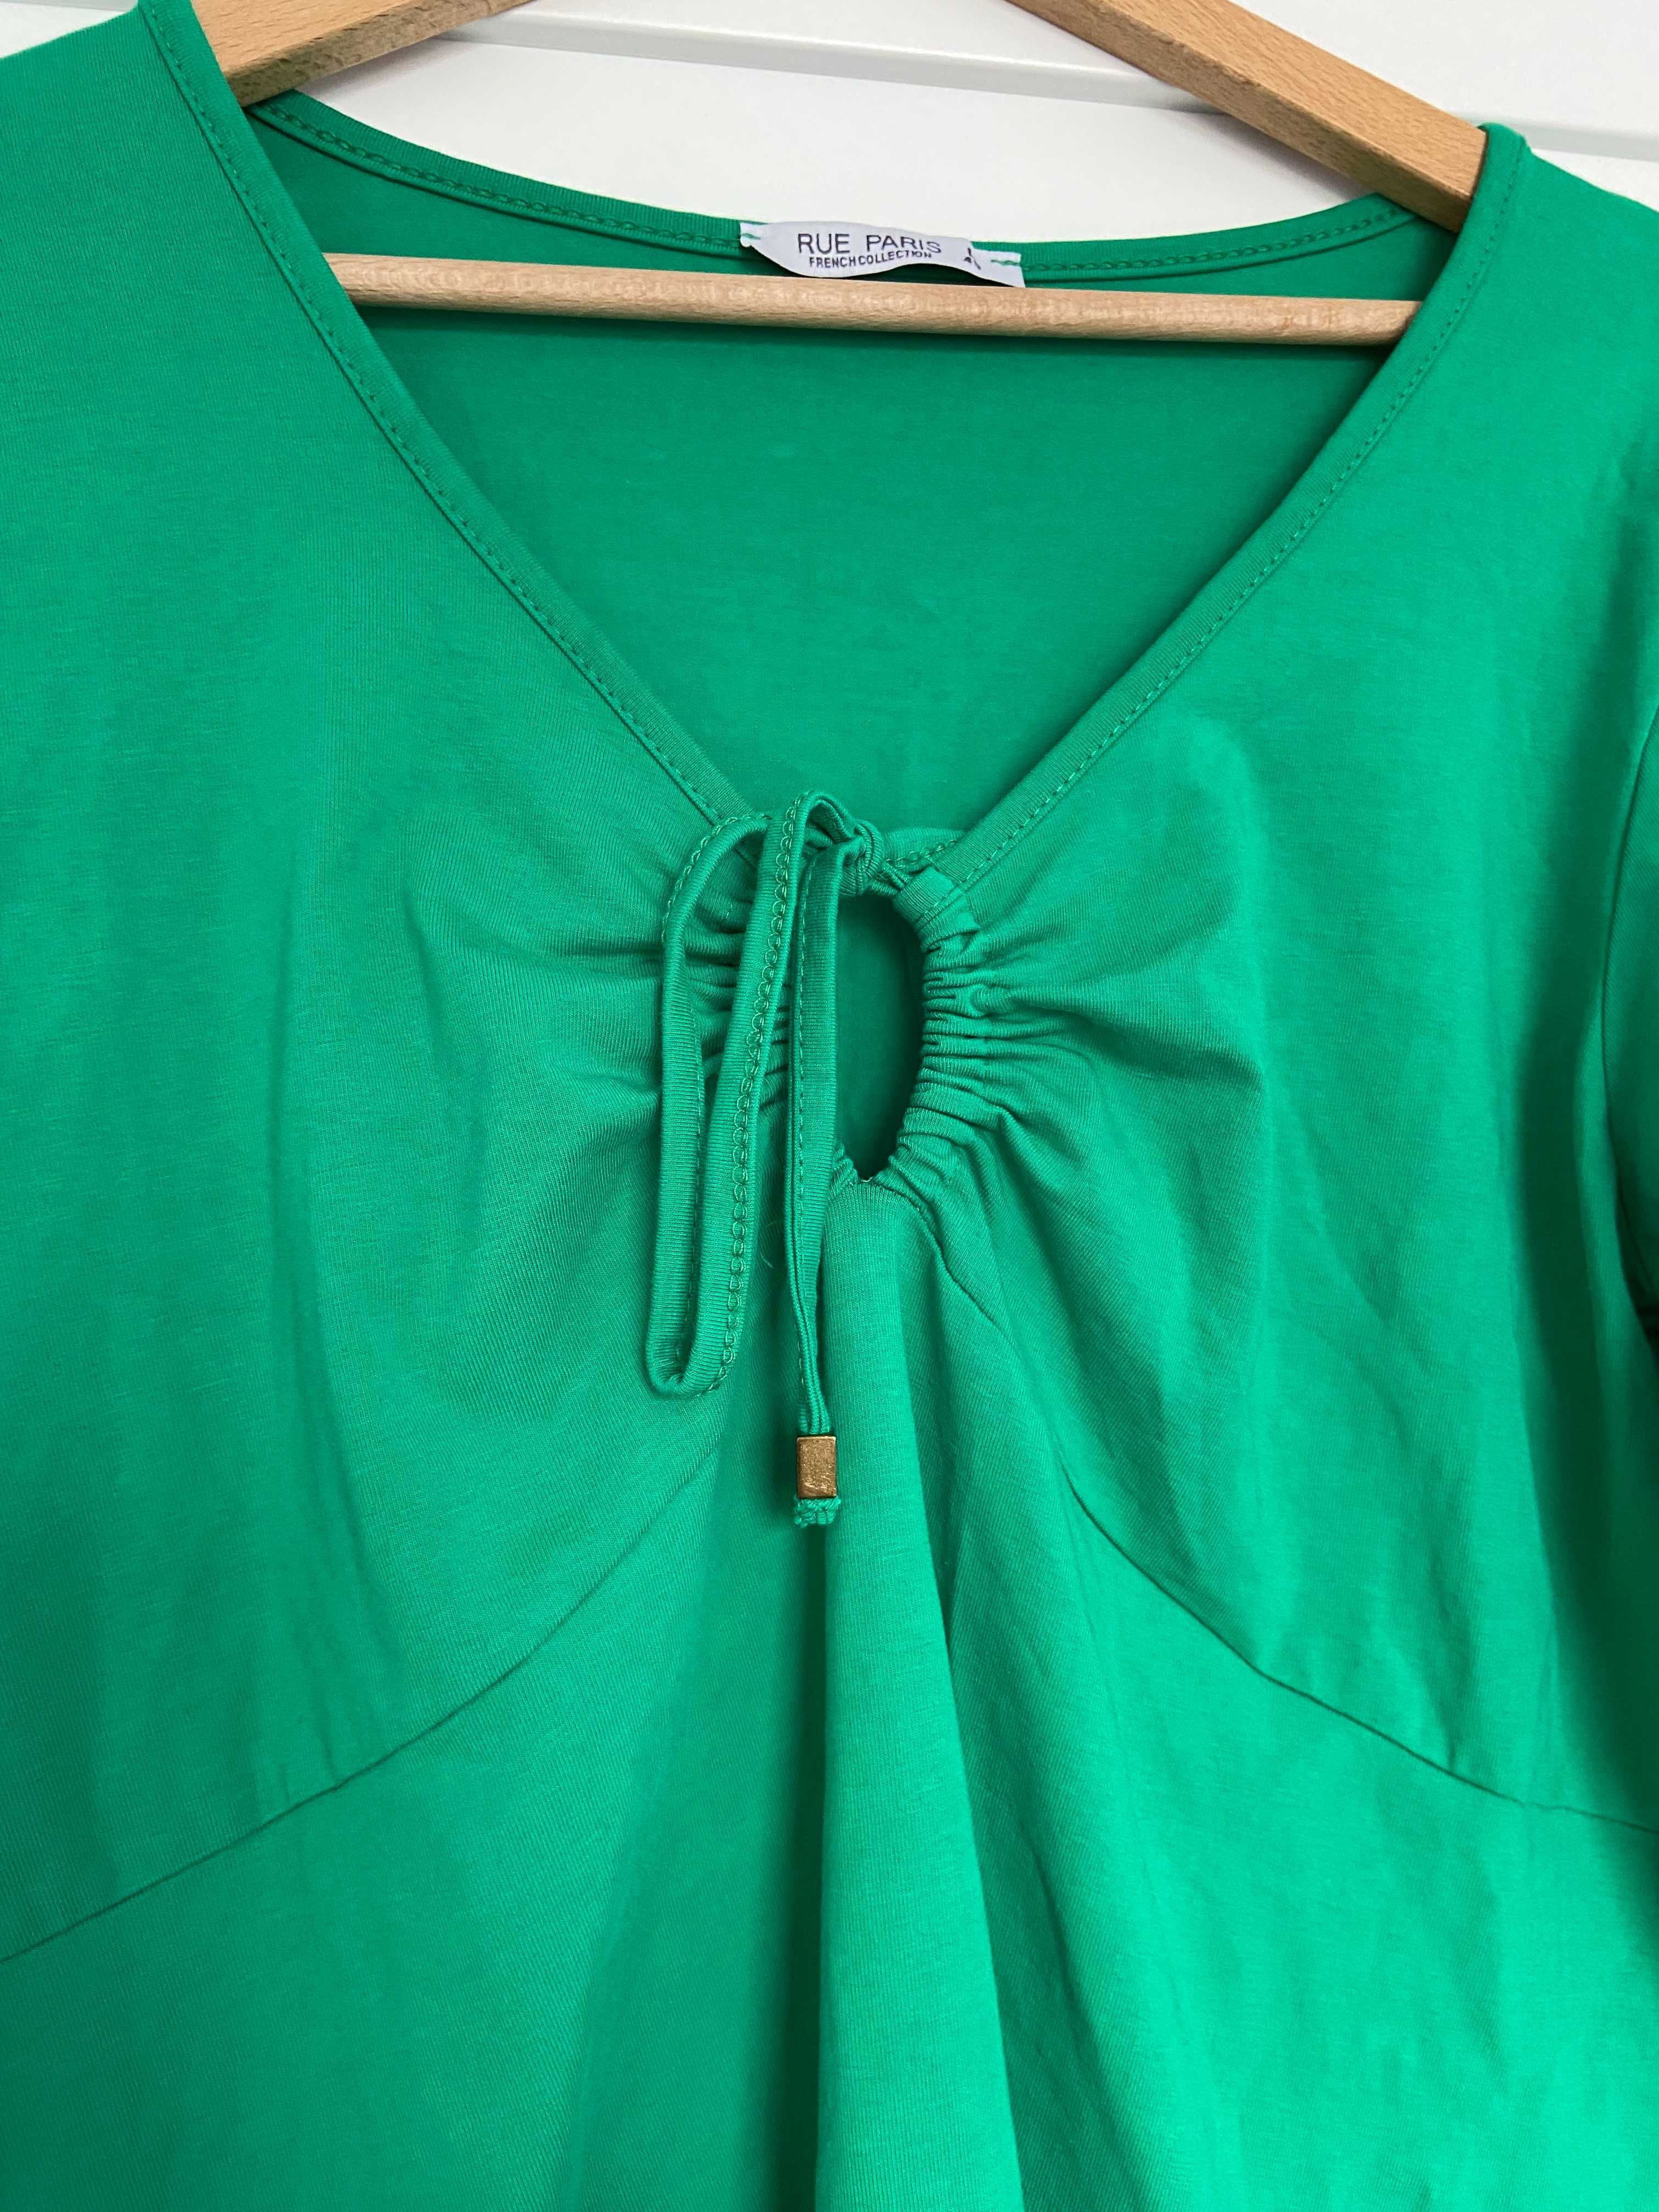 Śliczna dresowa zielona sukienka z wiążaniem na dekolcie viral musthav